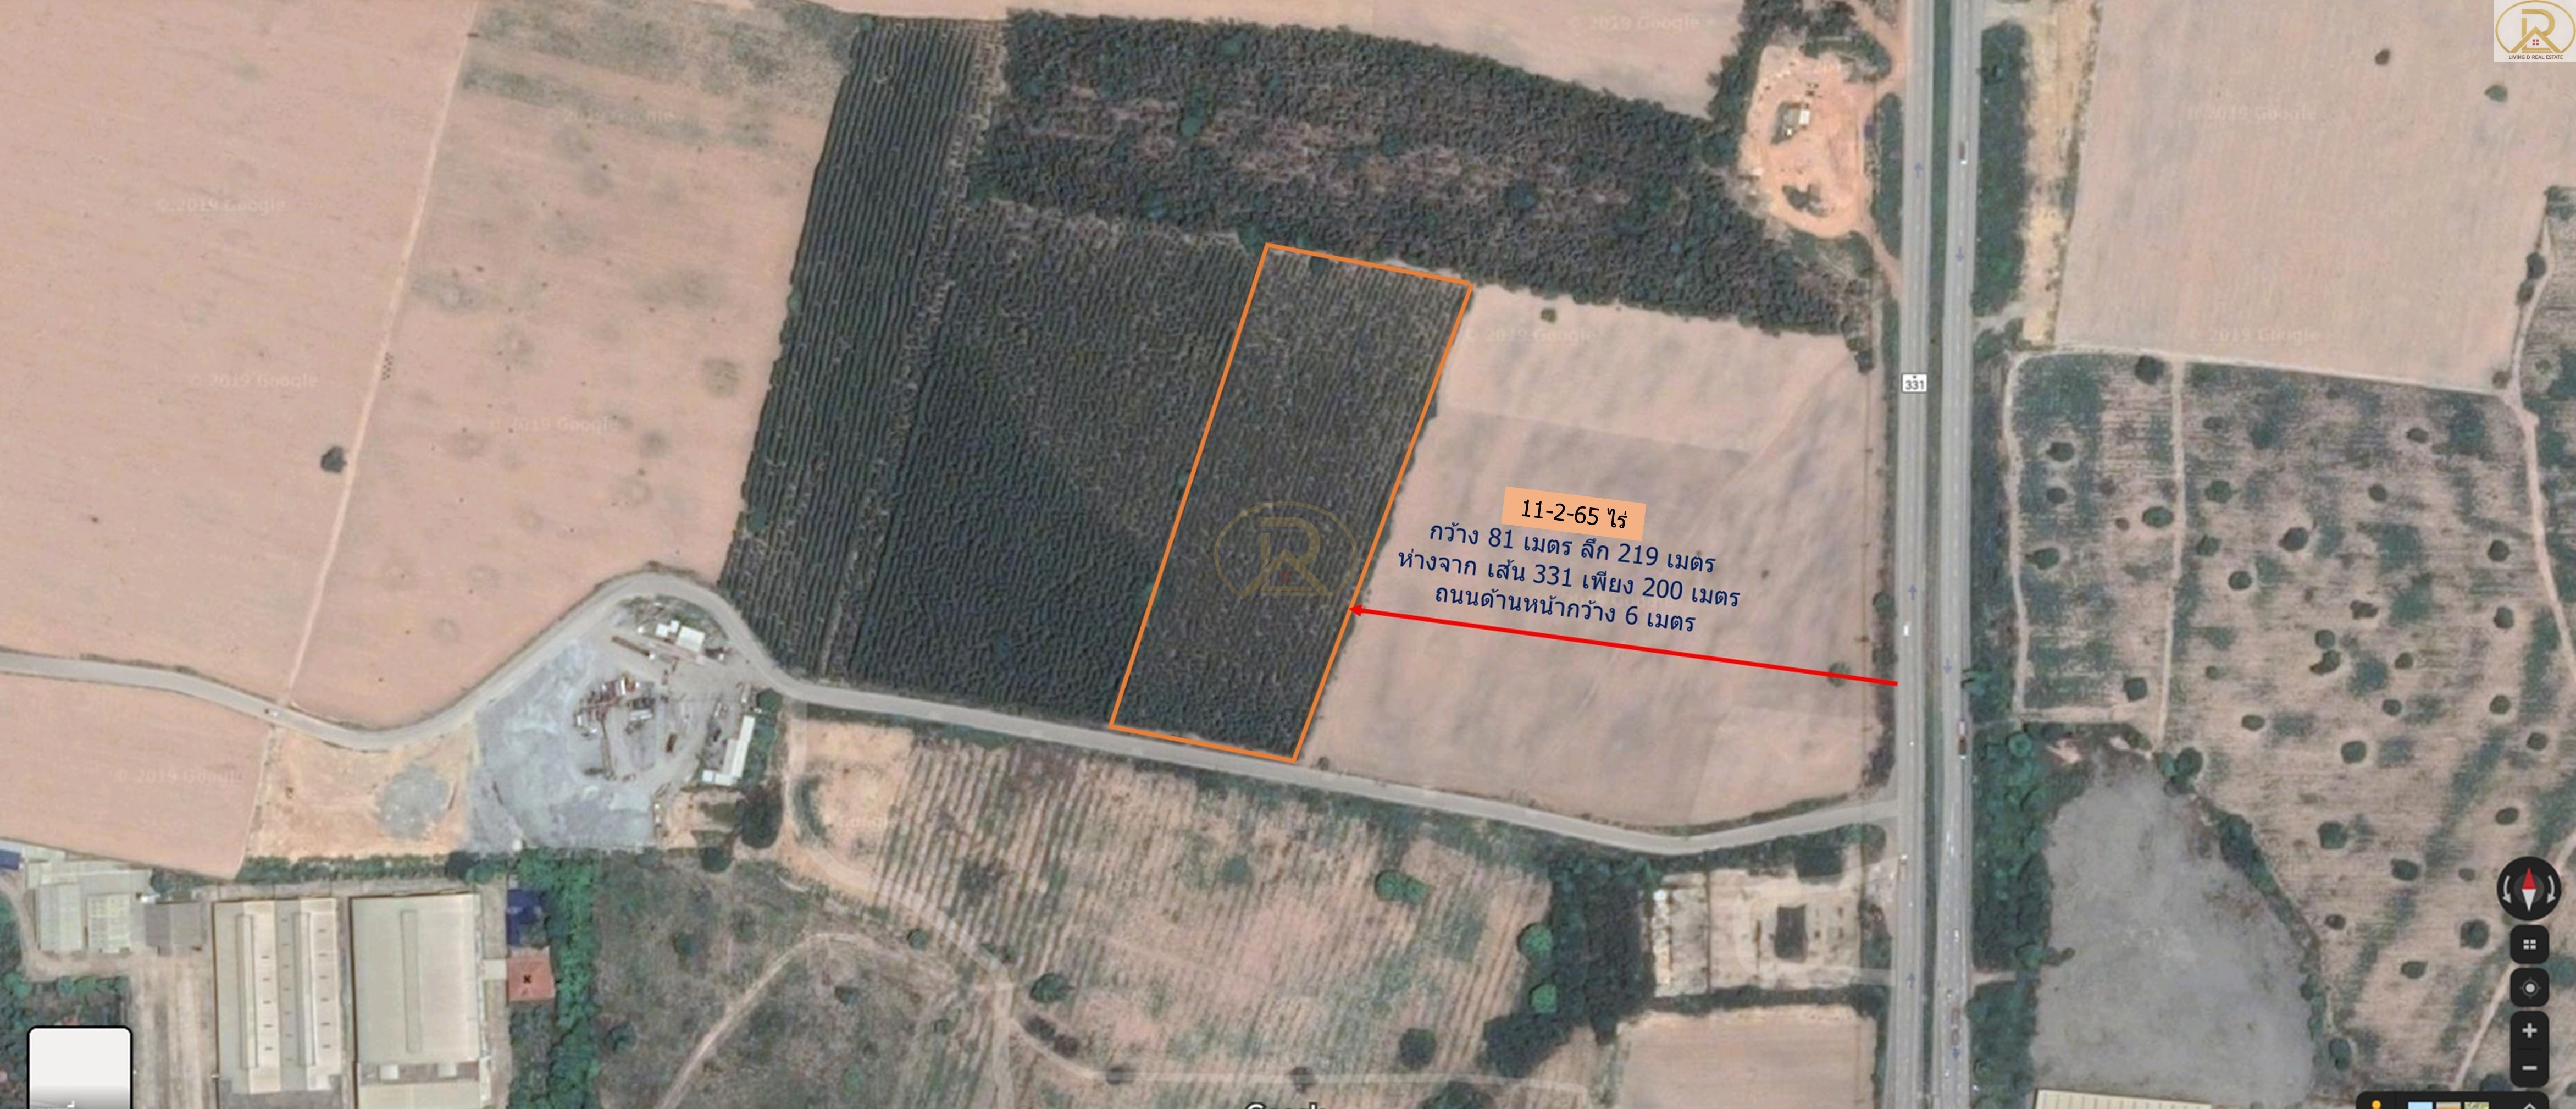 ขายที่ดิน ถูกมาก ซื้อเก็งกำไรคุ้มสุดๆ ห่างจากเส้น 331 เพียง 200เมตร 11-2-65 ไร่ พนัสนิคม ชลบุรี รูปที่ 1